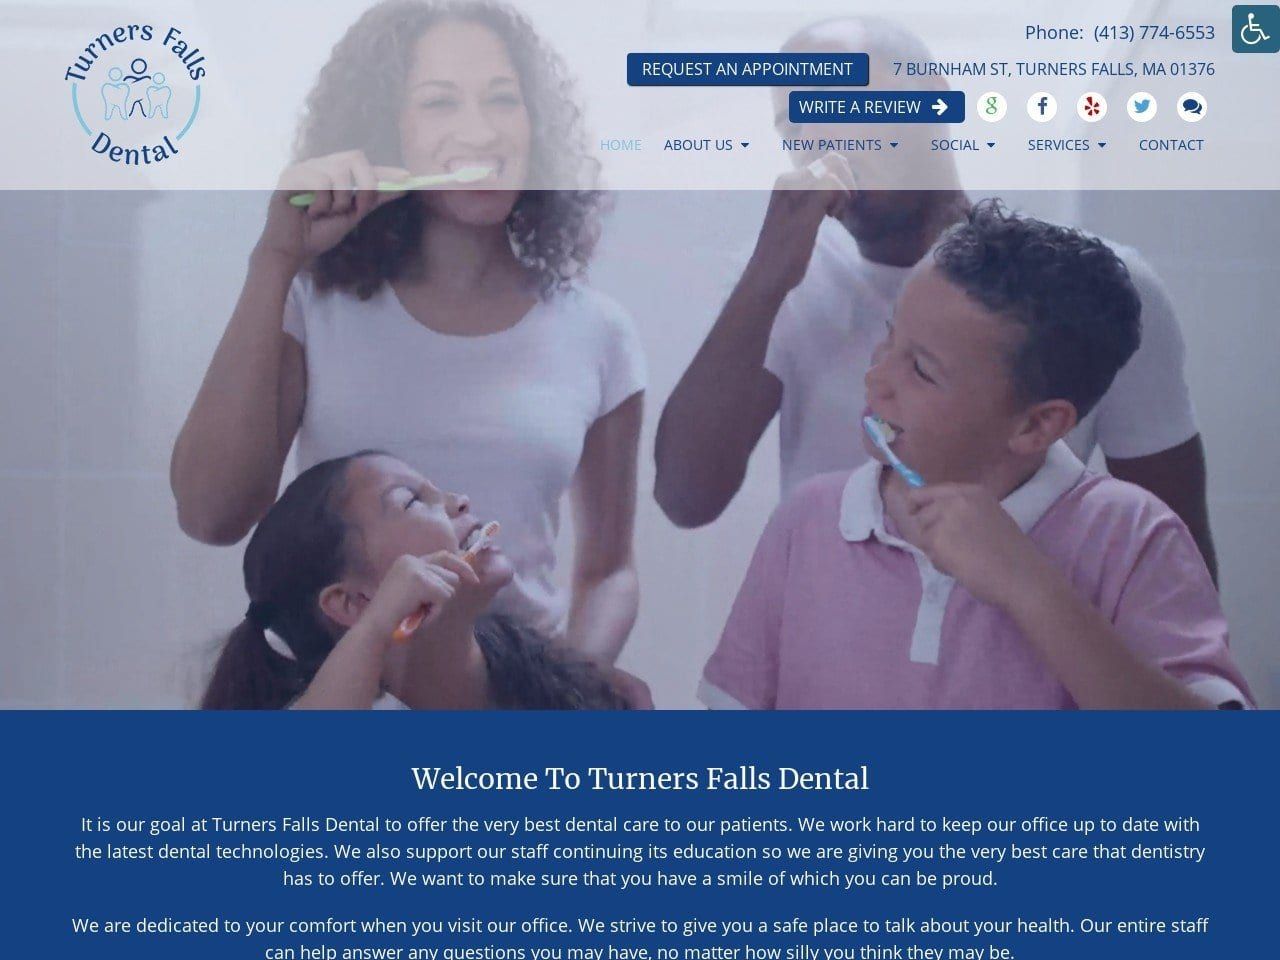 Turners Falls Dental Jeffrey M. Collura DMD Website Screenshot from turnersfallsdental.com